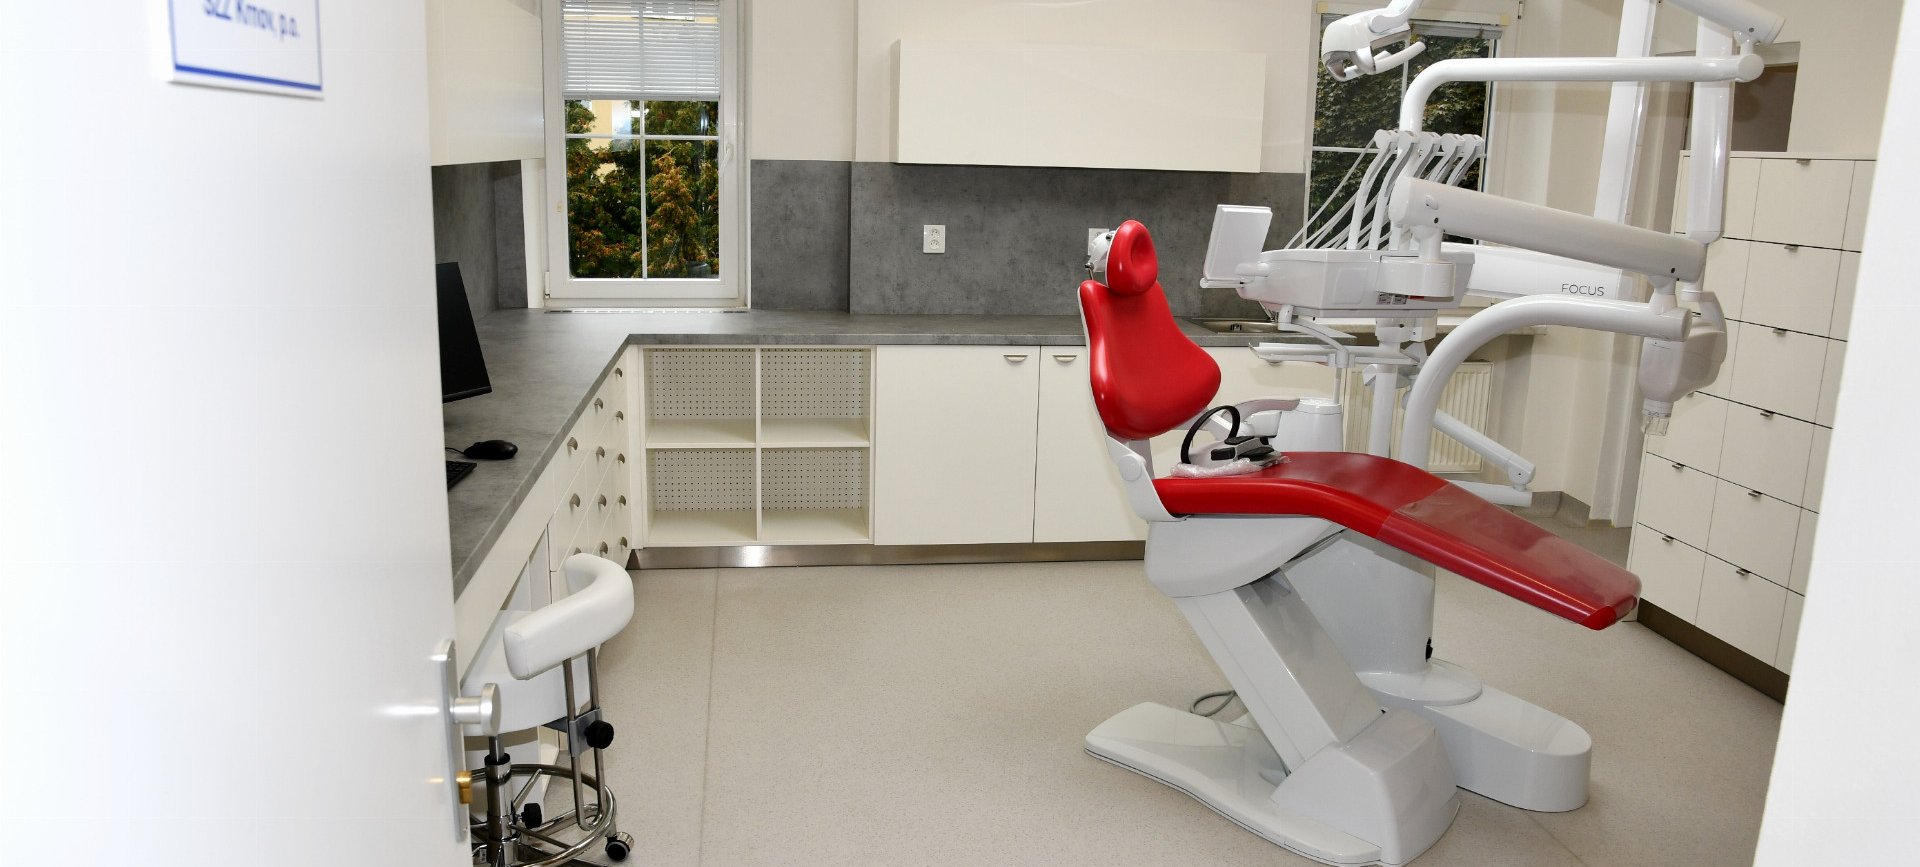 Zubní ordinace SZZ Krnov v Rýmařově se pokusí přijmout většinu zájemců